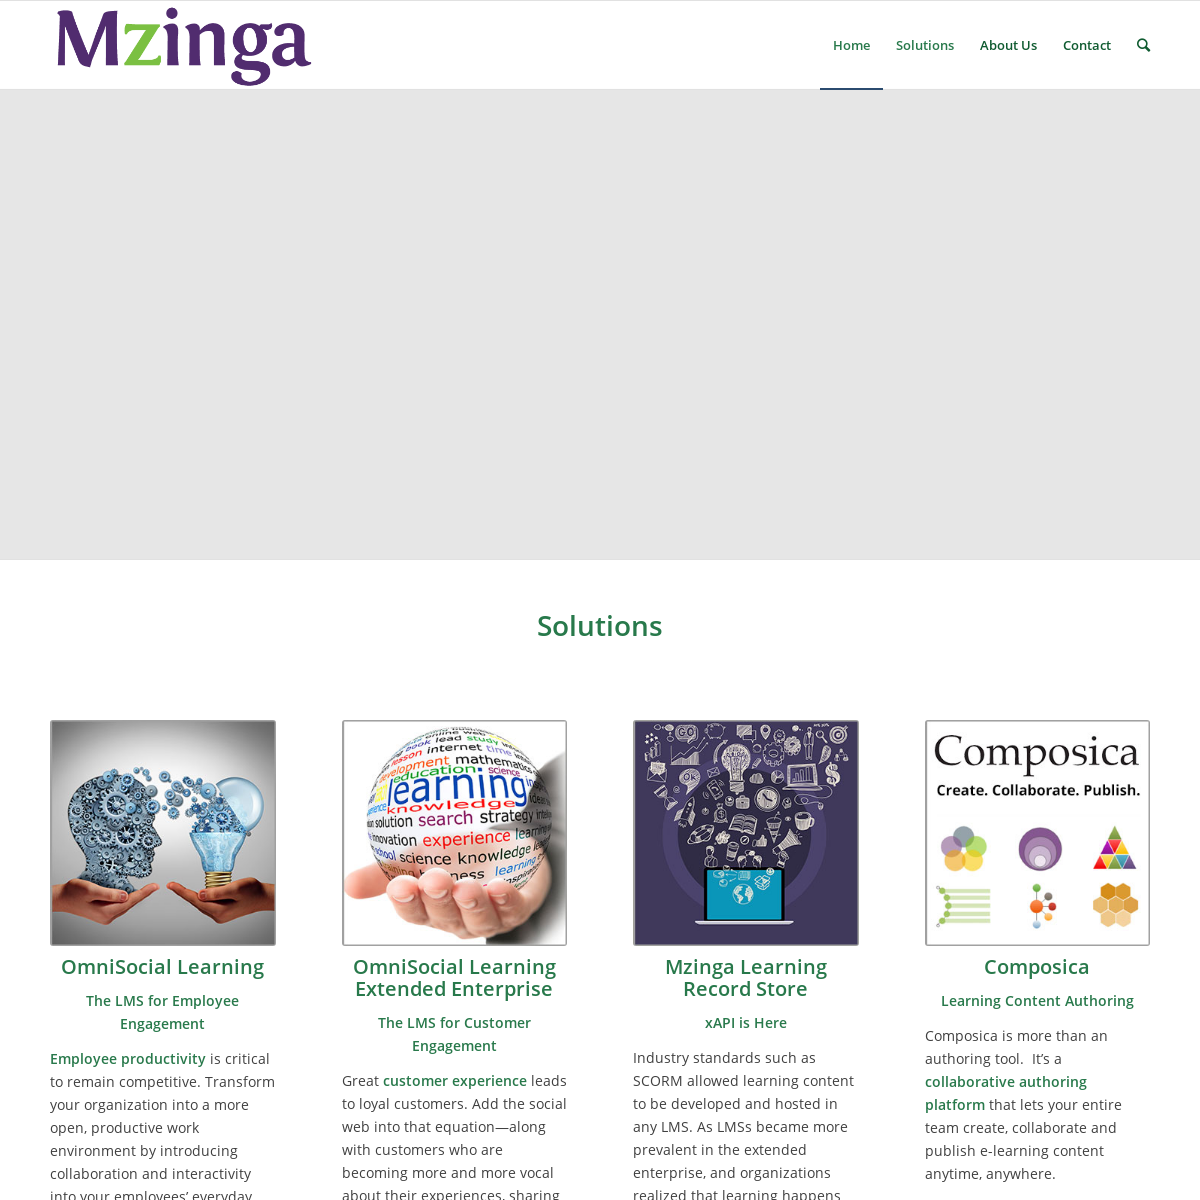 A complete backup of mzinga.com